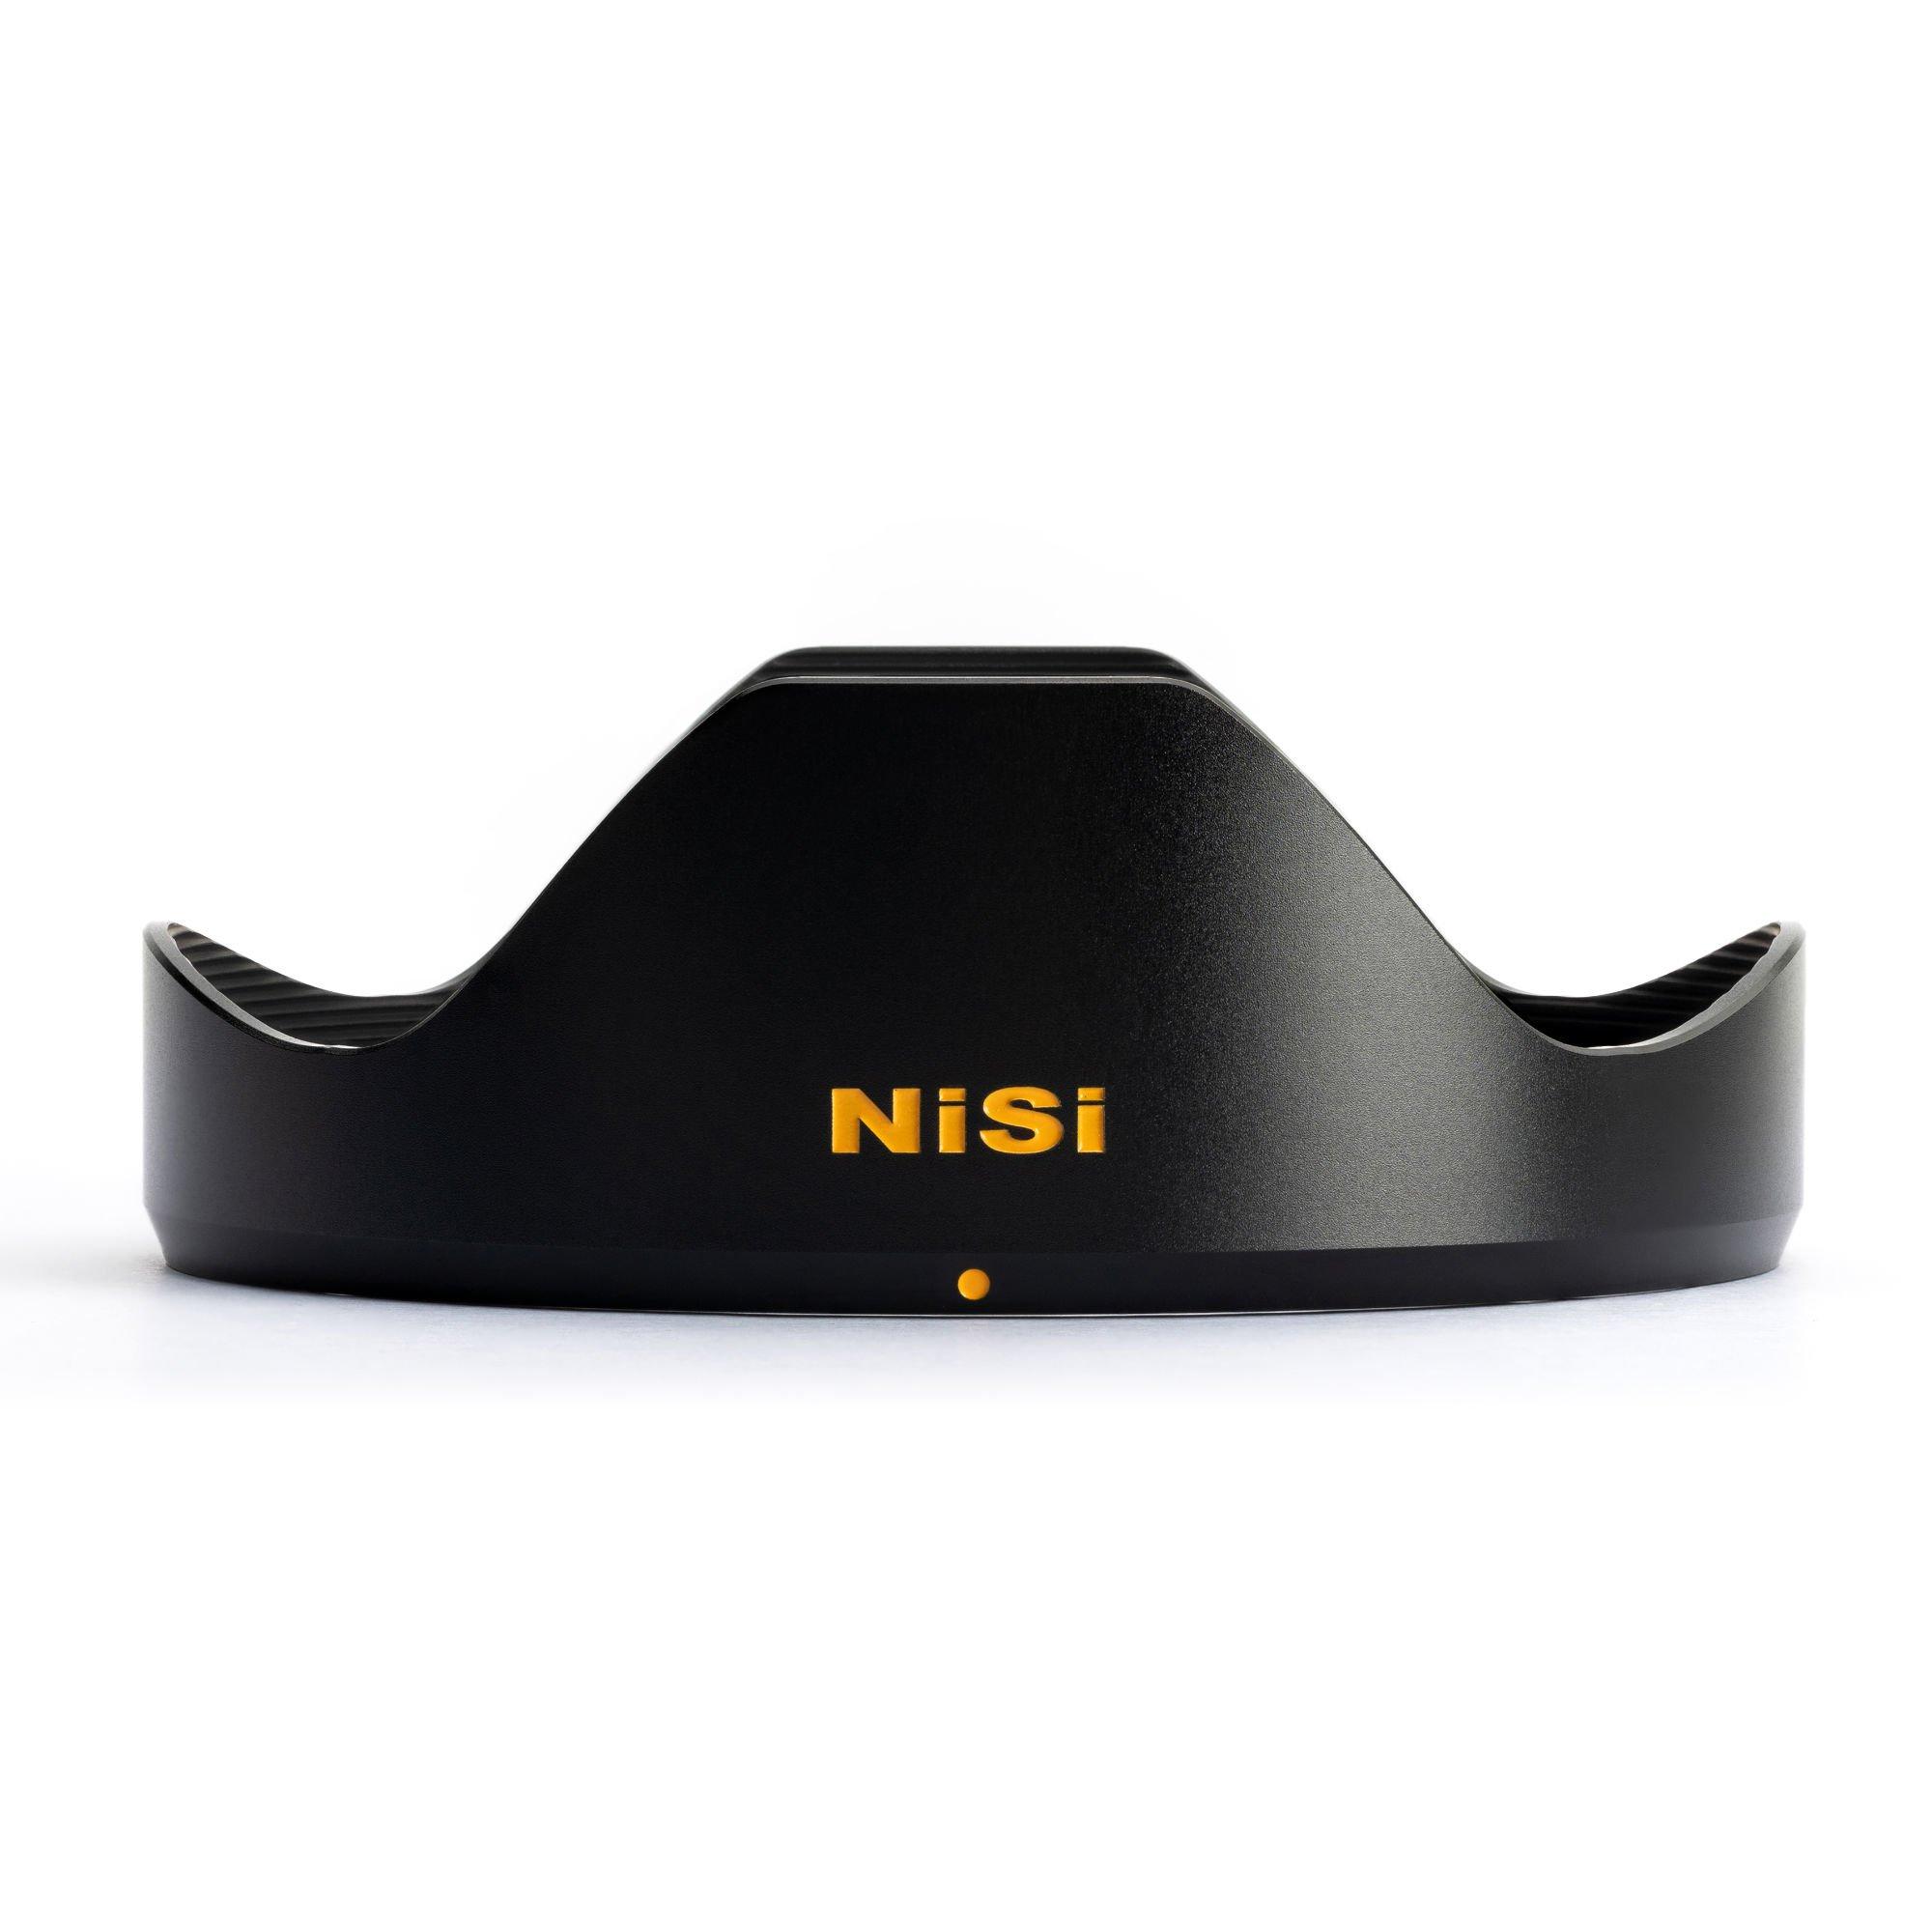 Nisi  NiSi 359601 obiettivo per fotocamera MILC Obiettivo ultra-ampio Nero 